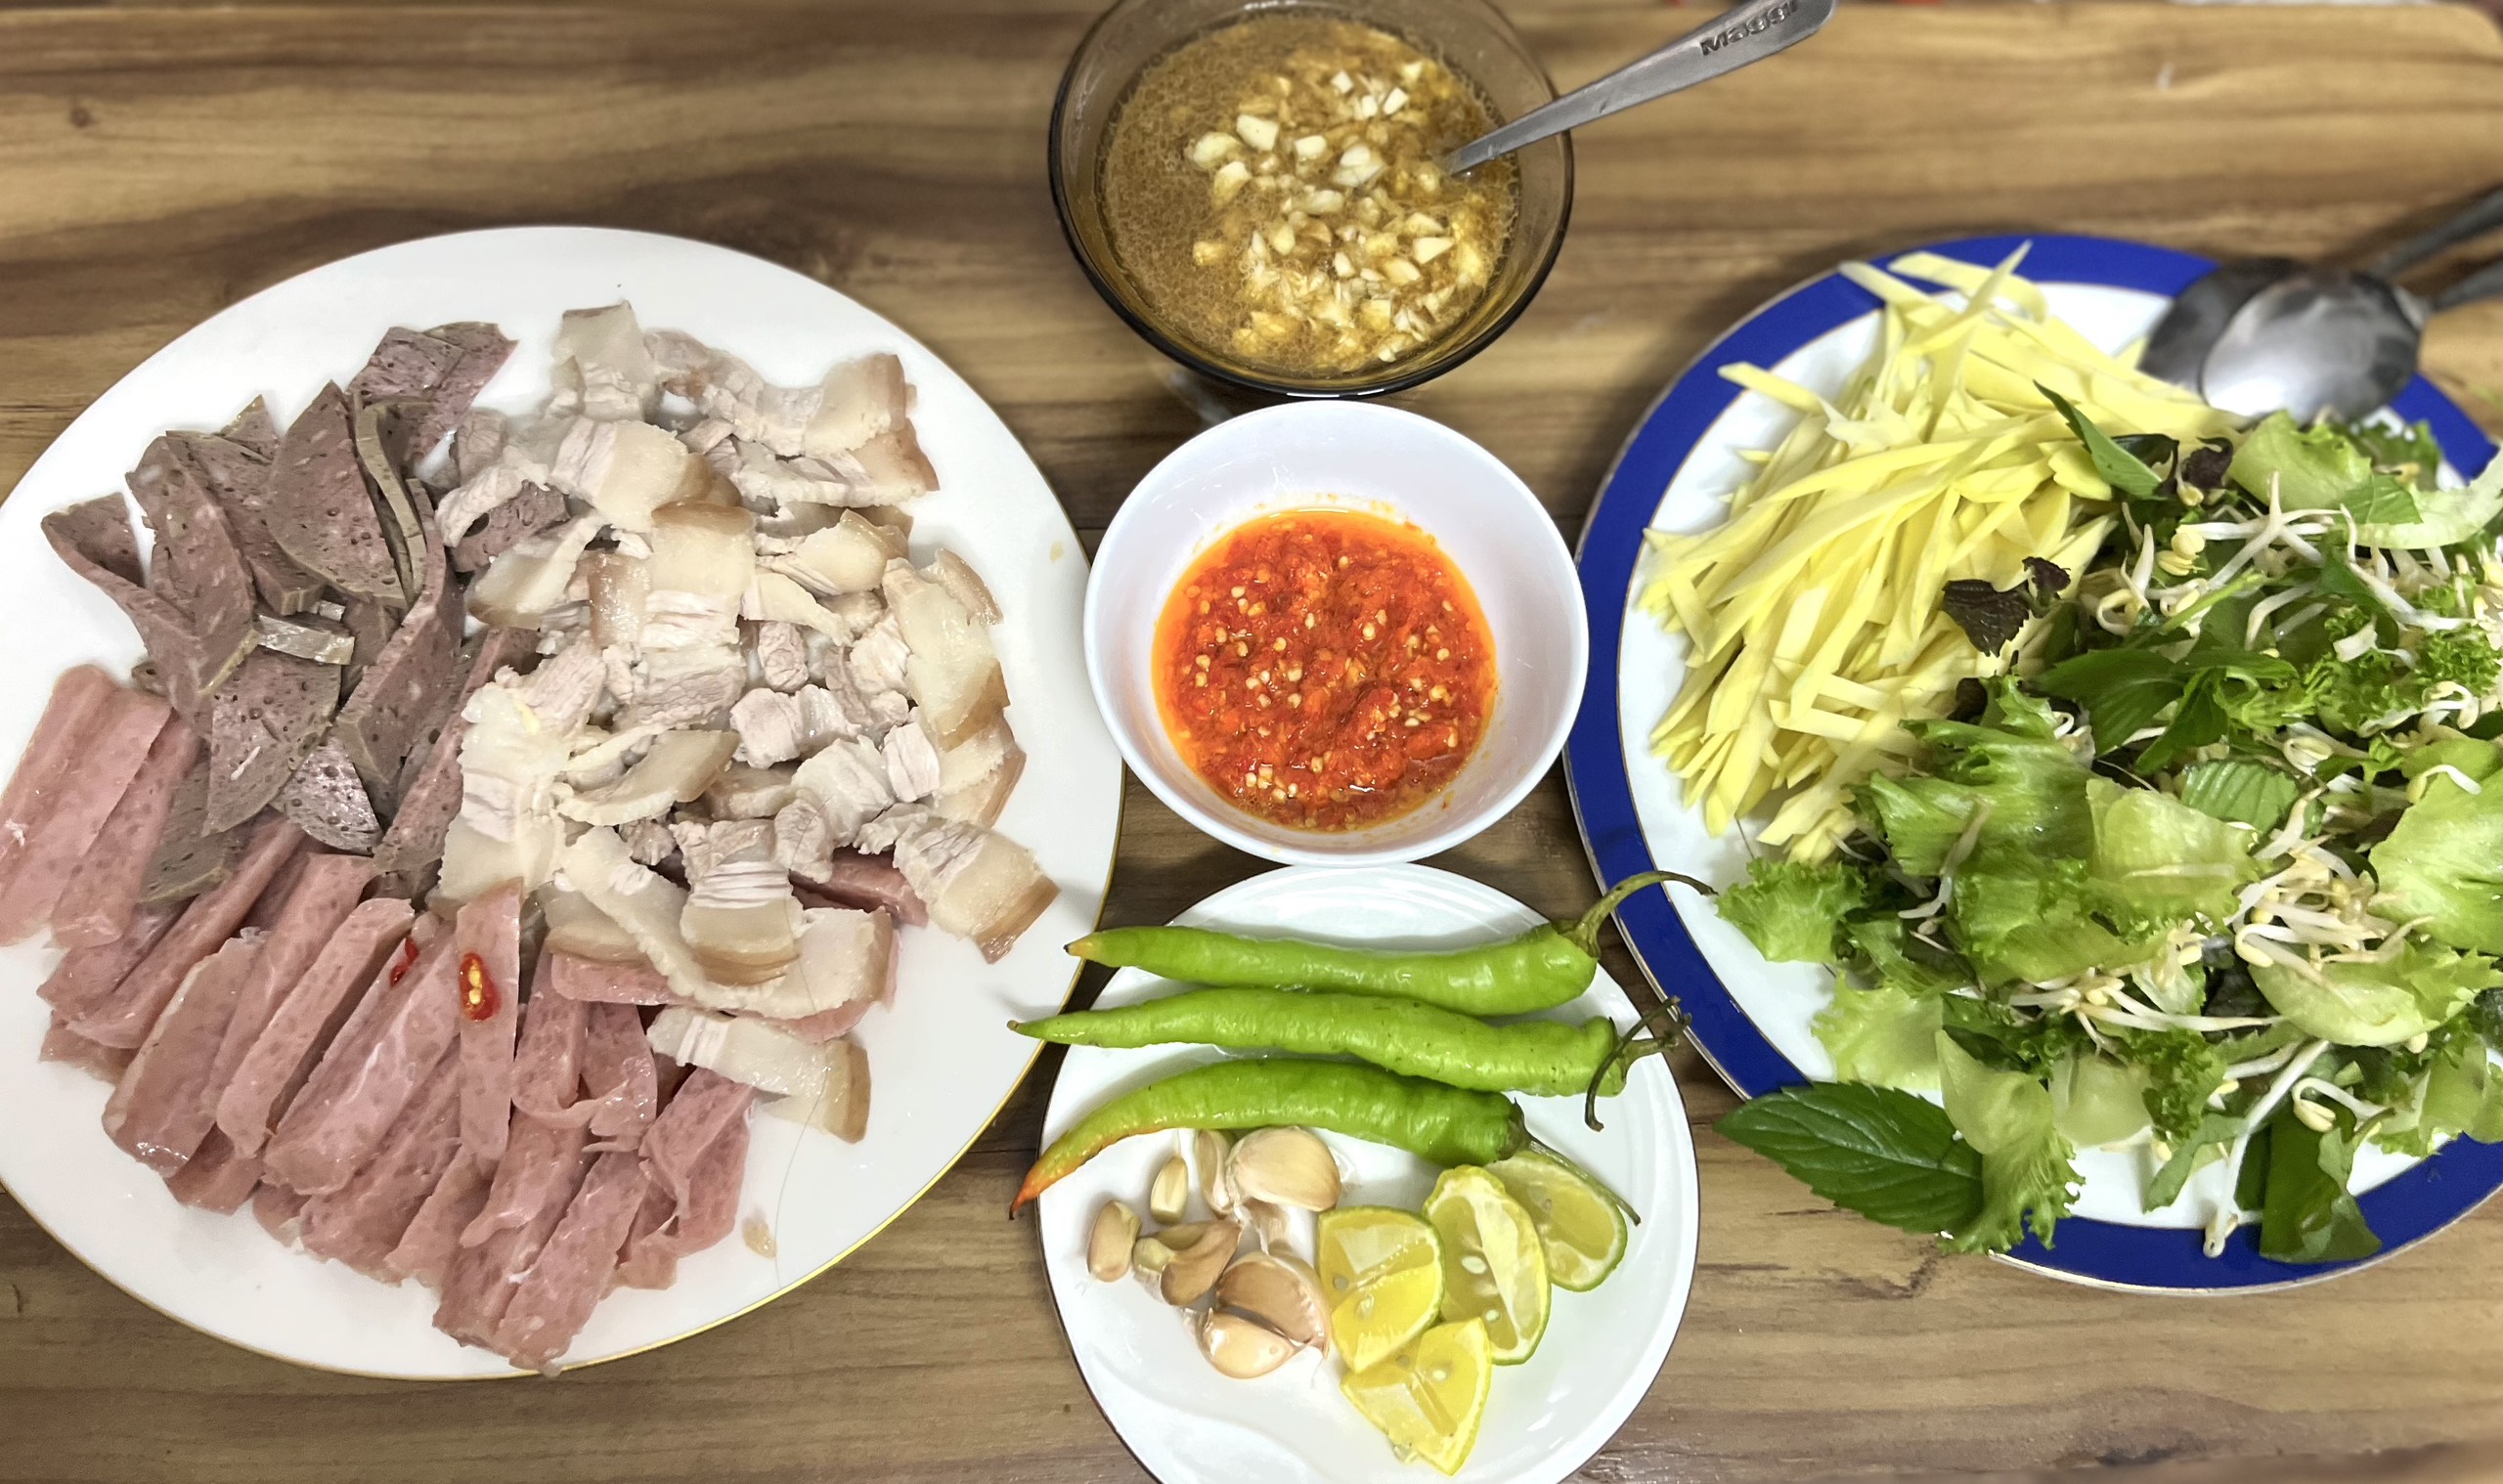 Sống ở thành phố đắt đỏ bậc nhất Việt Nam, bà mẹ 2 con chọn cách nhờ người nhà gửi đồ ở quê vào, vừa đúng khẩu vị mà giá cả lại hợp lý  - Ảnh 6.